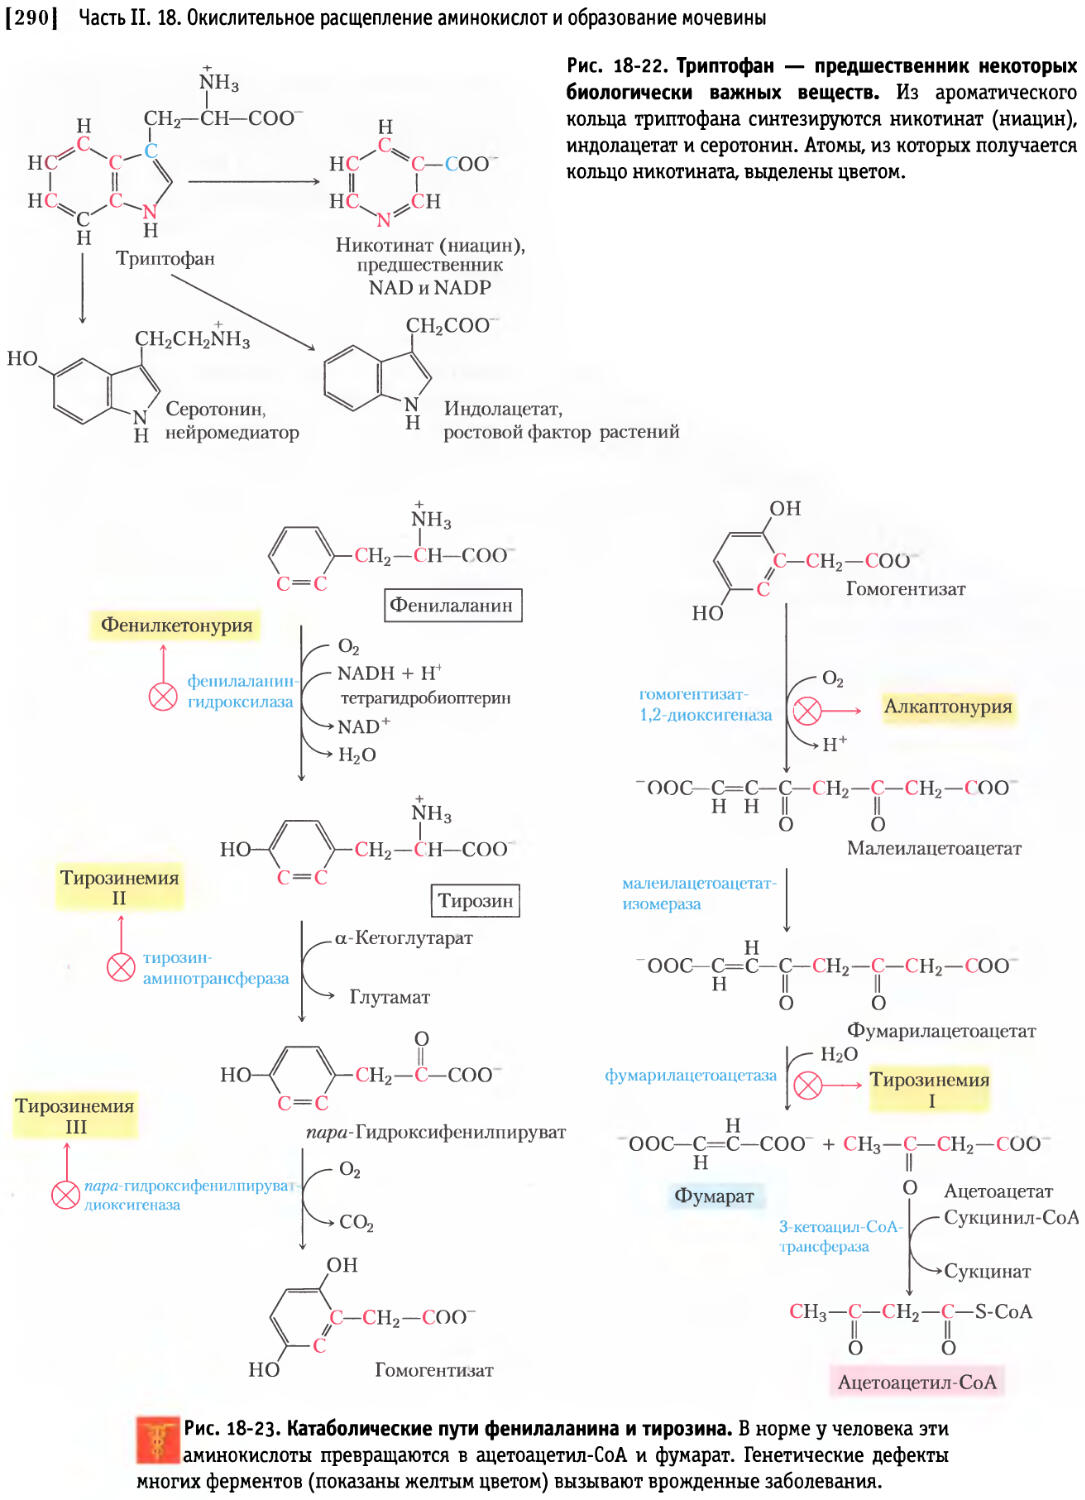 Синтез тирозина. Схема альтернативного пути превращения фенилаланина. Схема катаболизма фенилаланина. Альтернативный путь катаболизма фенилаланина. Схема катаболизма тирозина в печени.